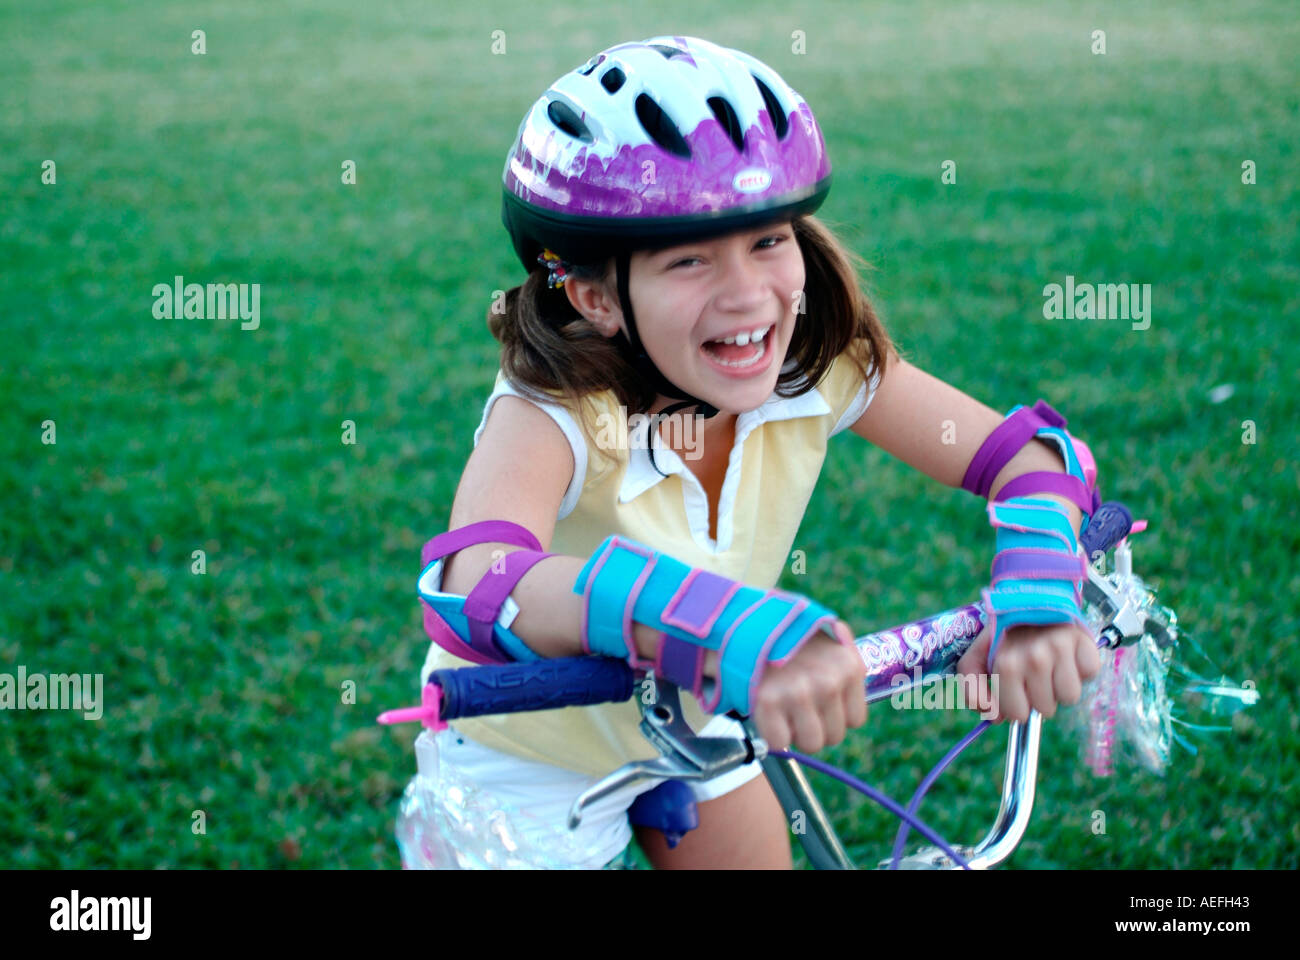 Niña montando bicicleta vistiendo protectora Fotografía de stock